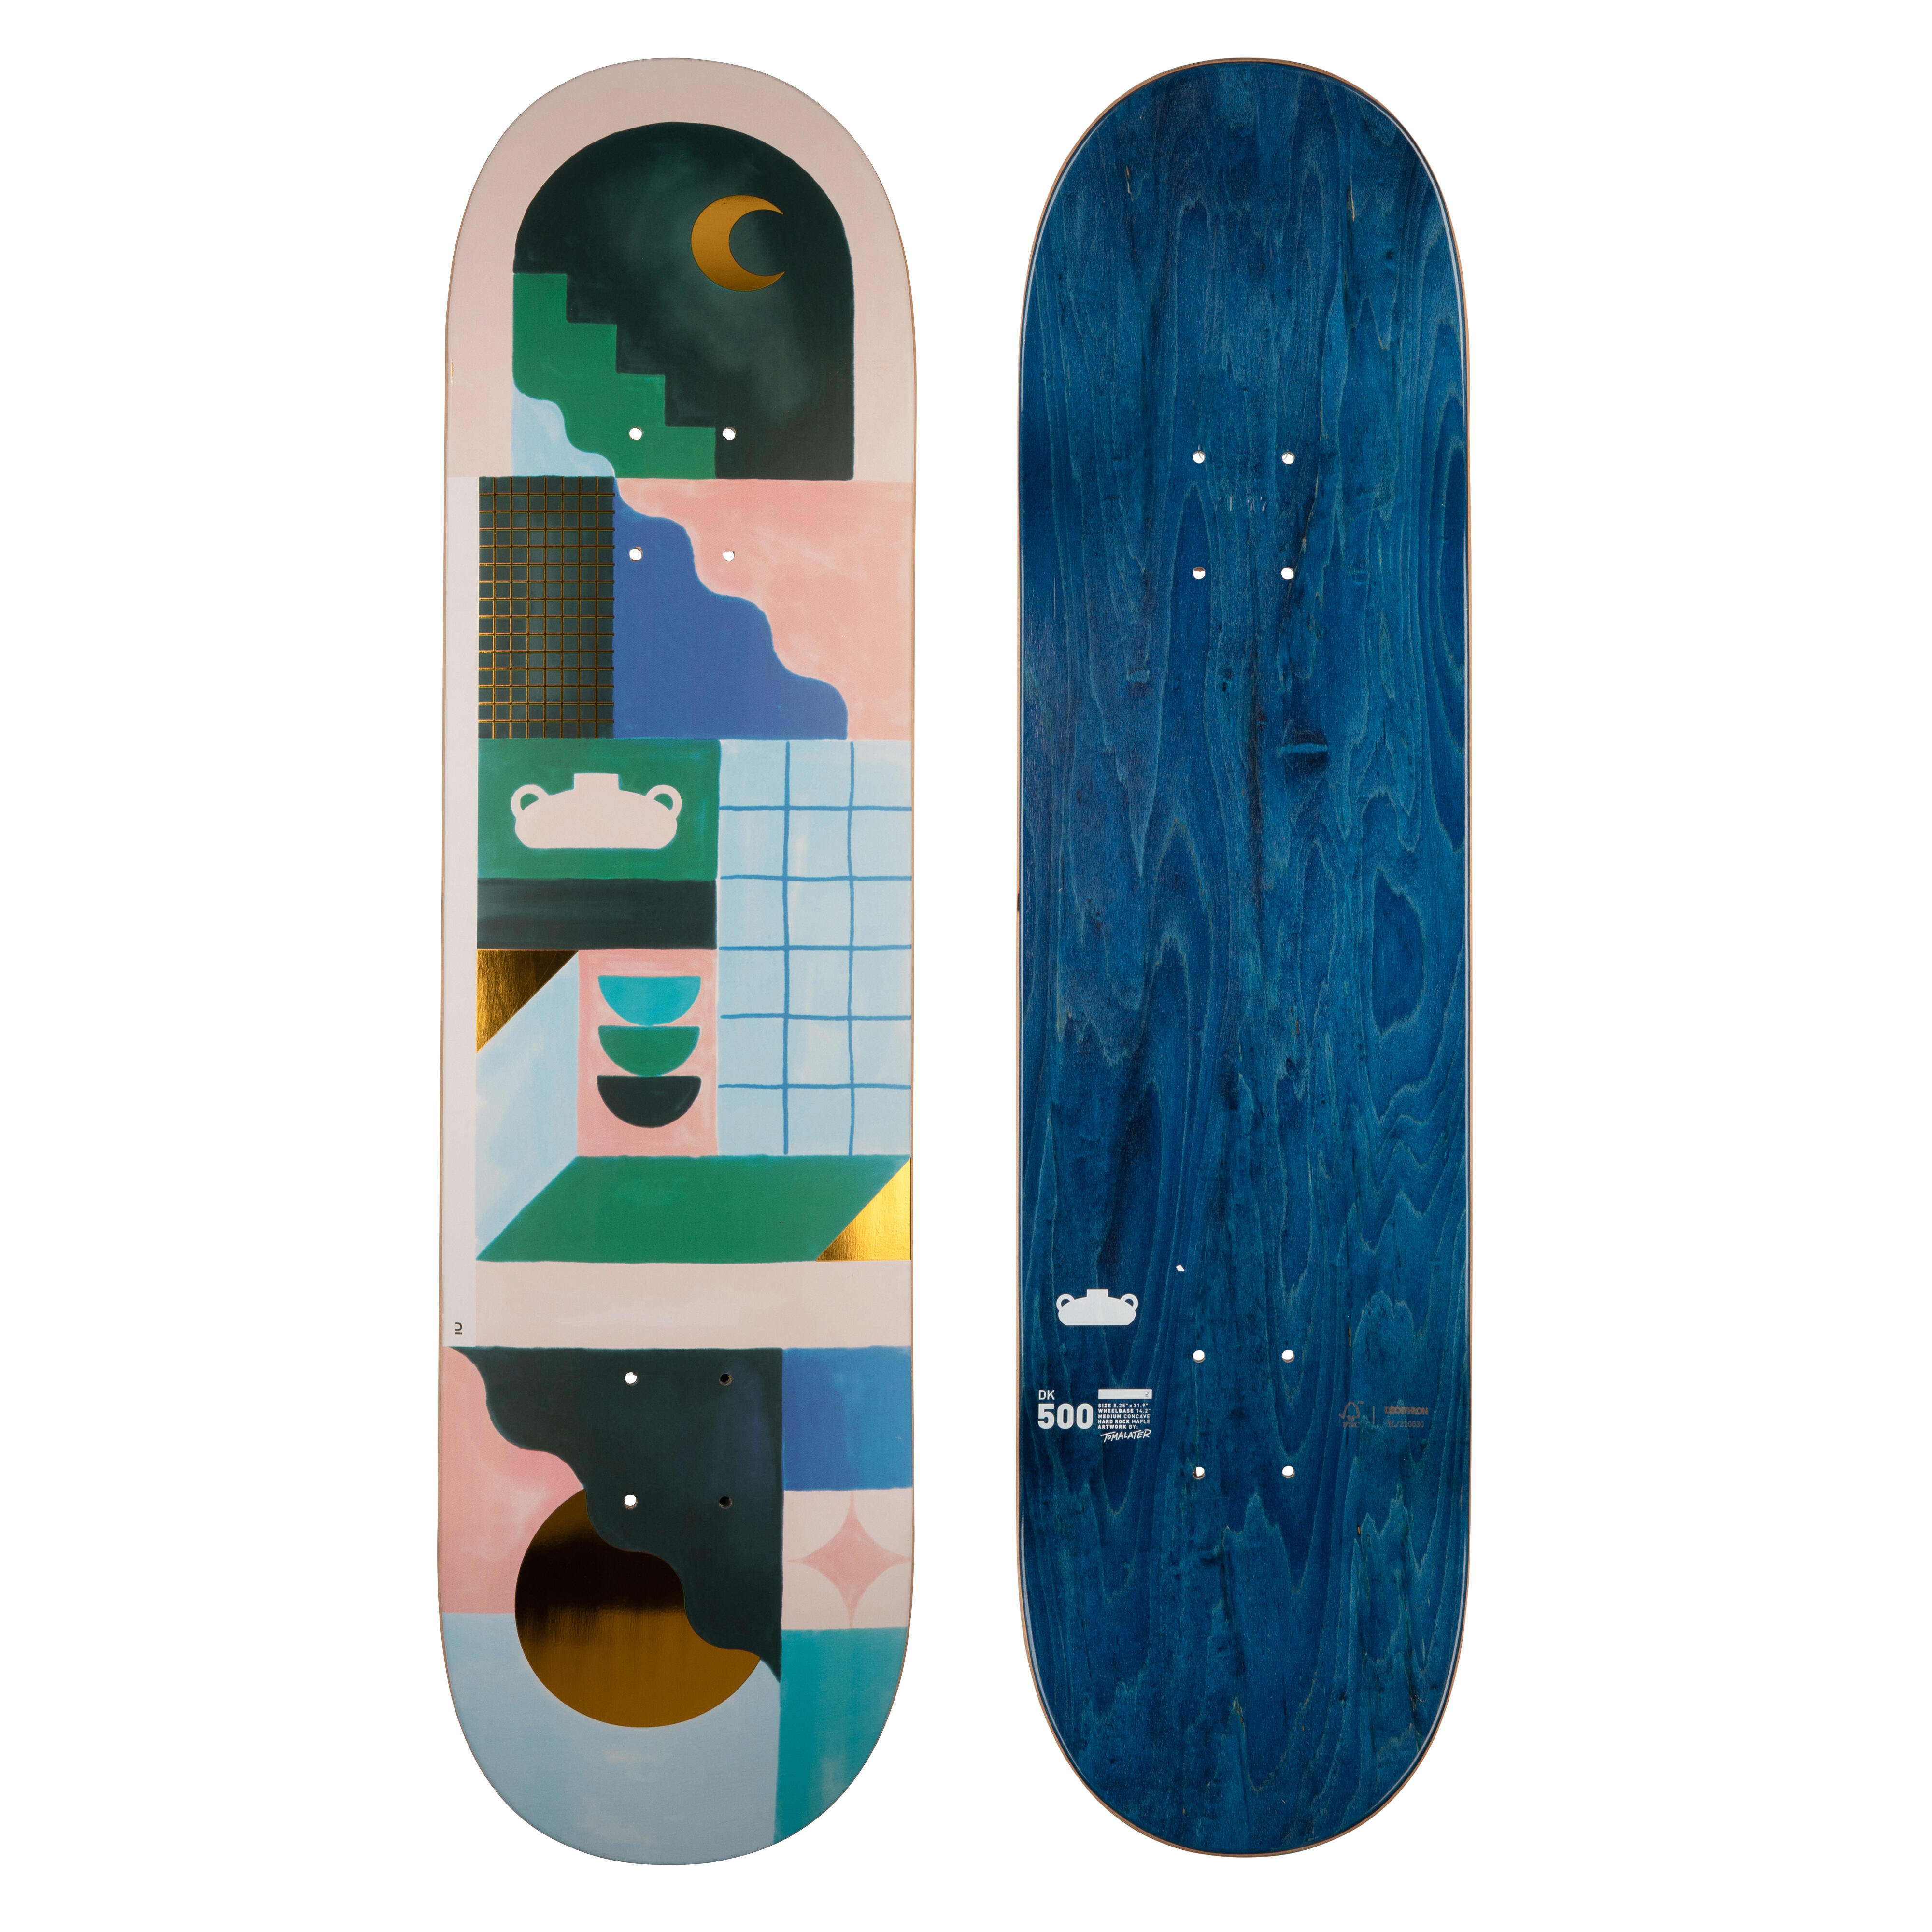 Placă Skateboard DK500 Mărimea 8,25″Grafică de @TOMALATER @TOMALATER  Placi si piese de schimb skateboard